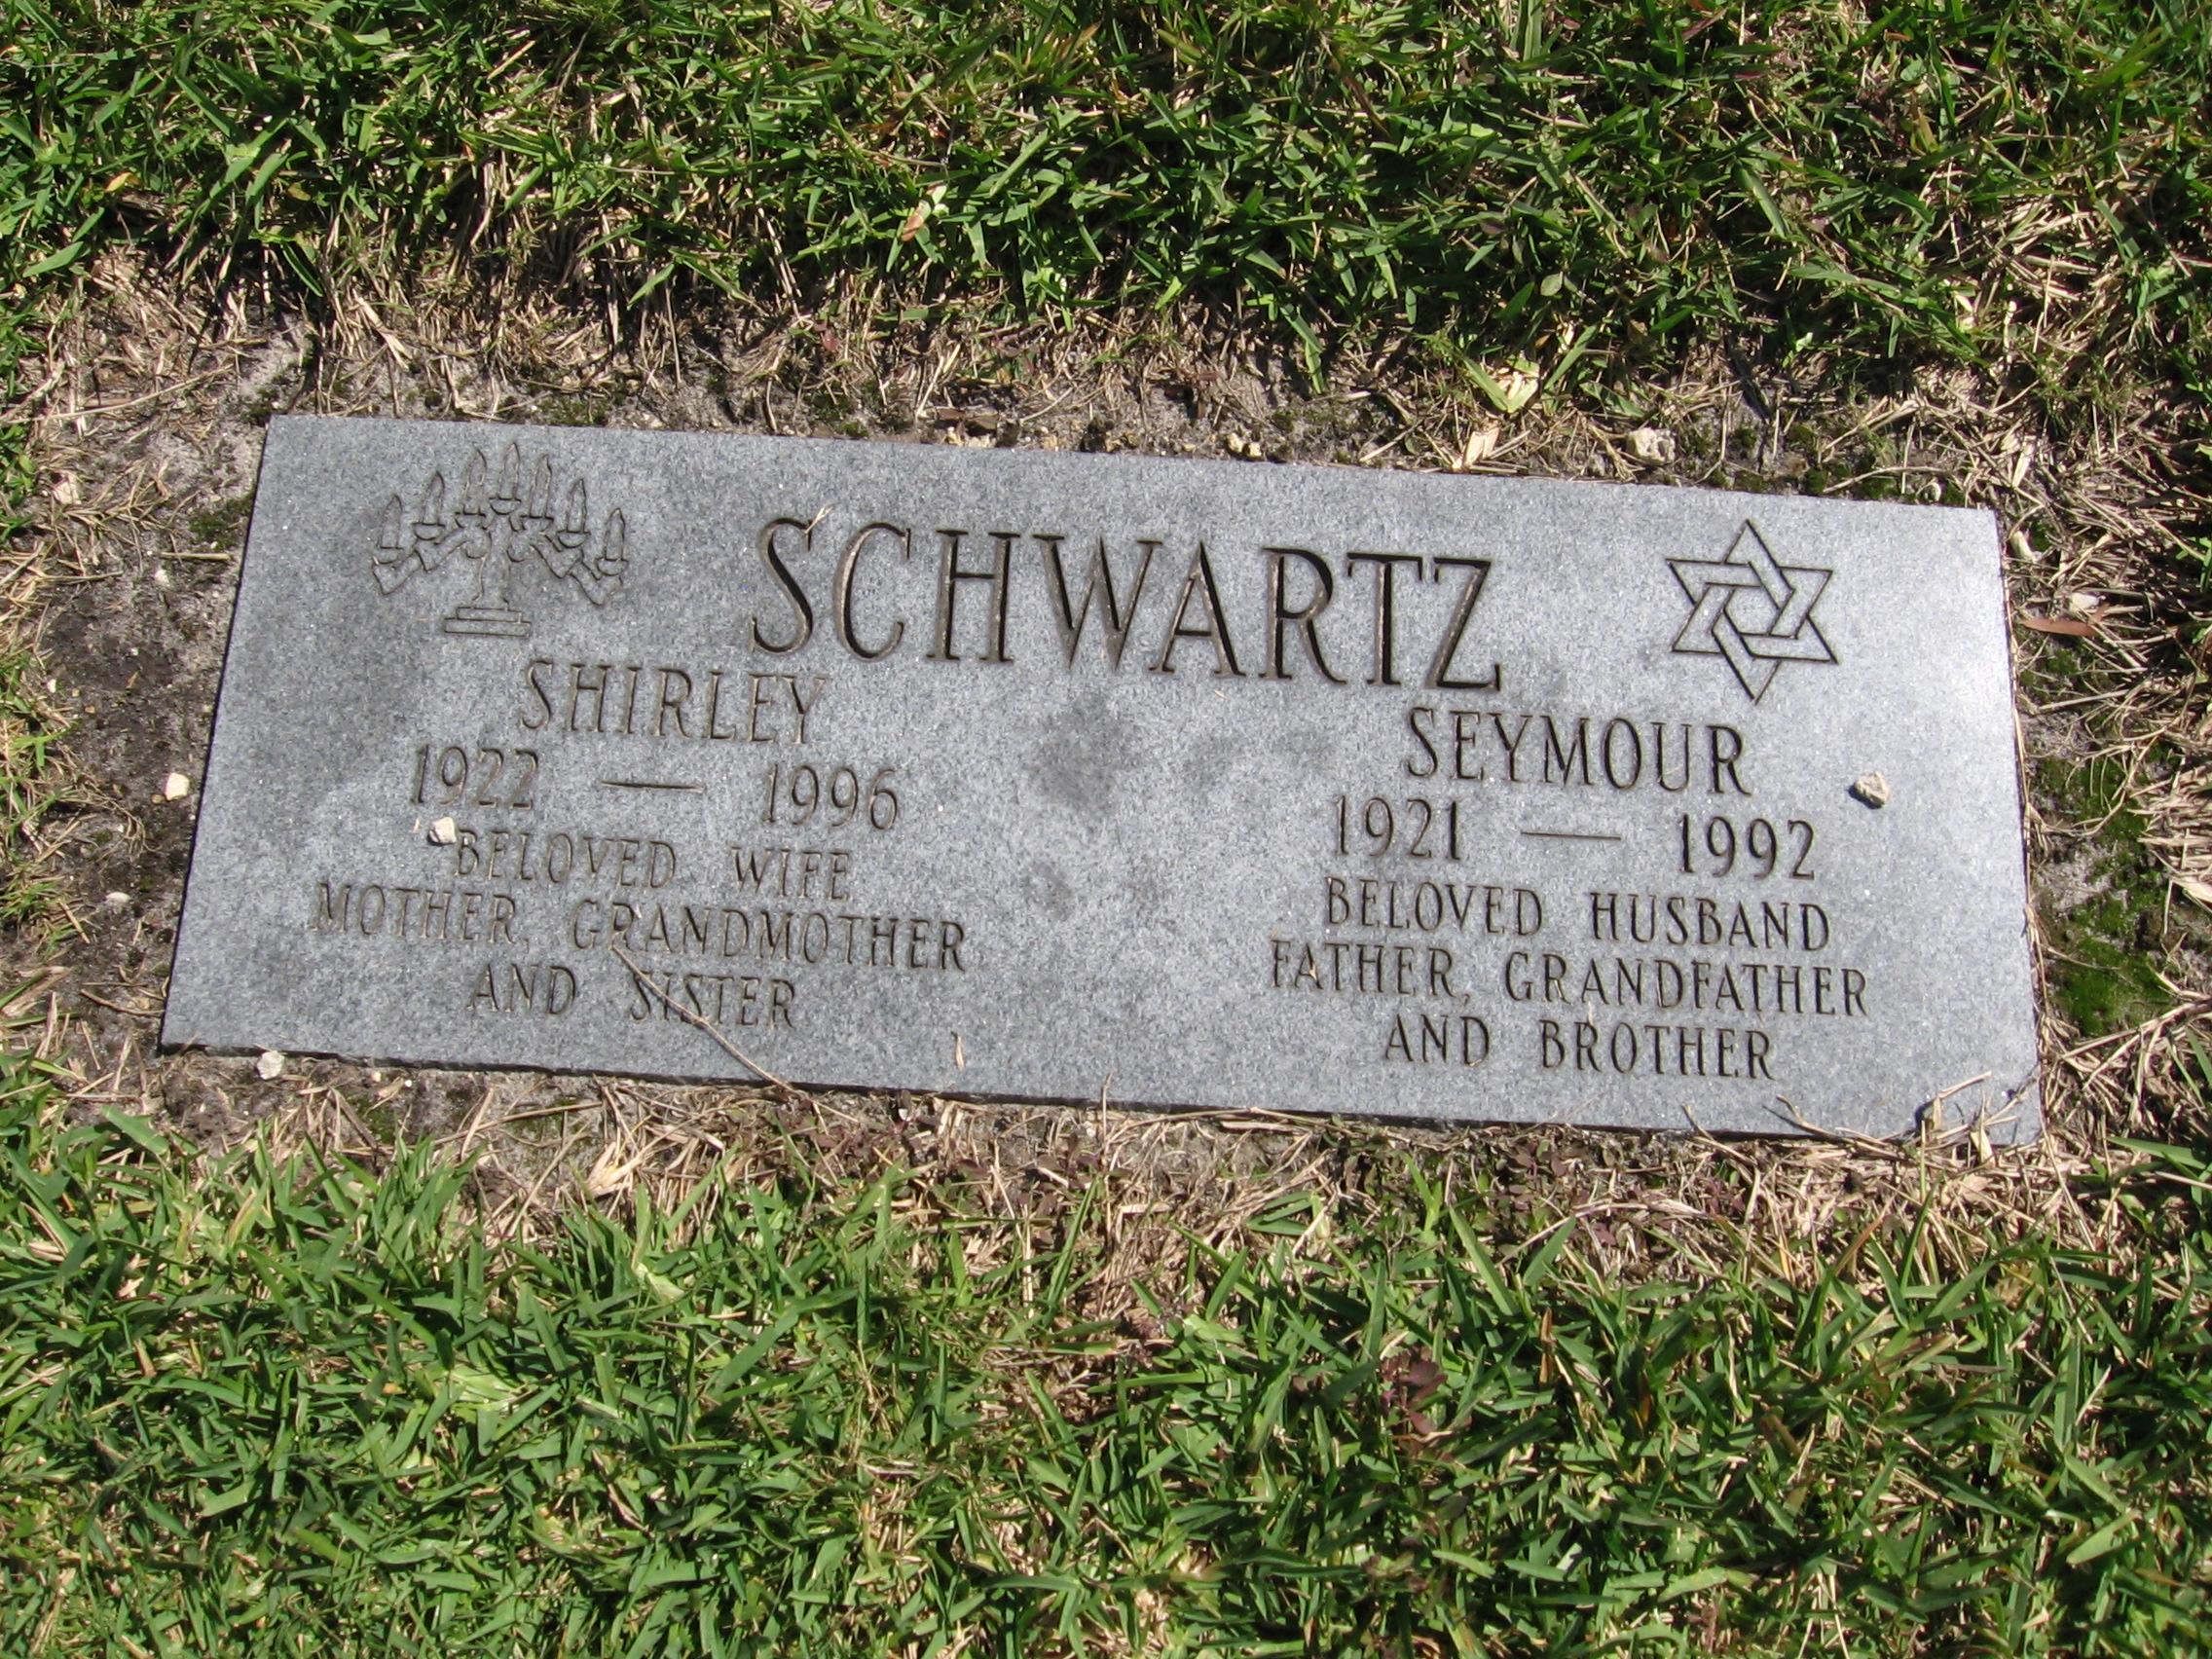 Seymour Schwartz